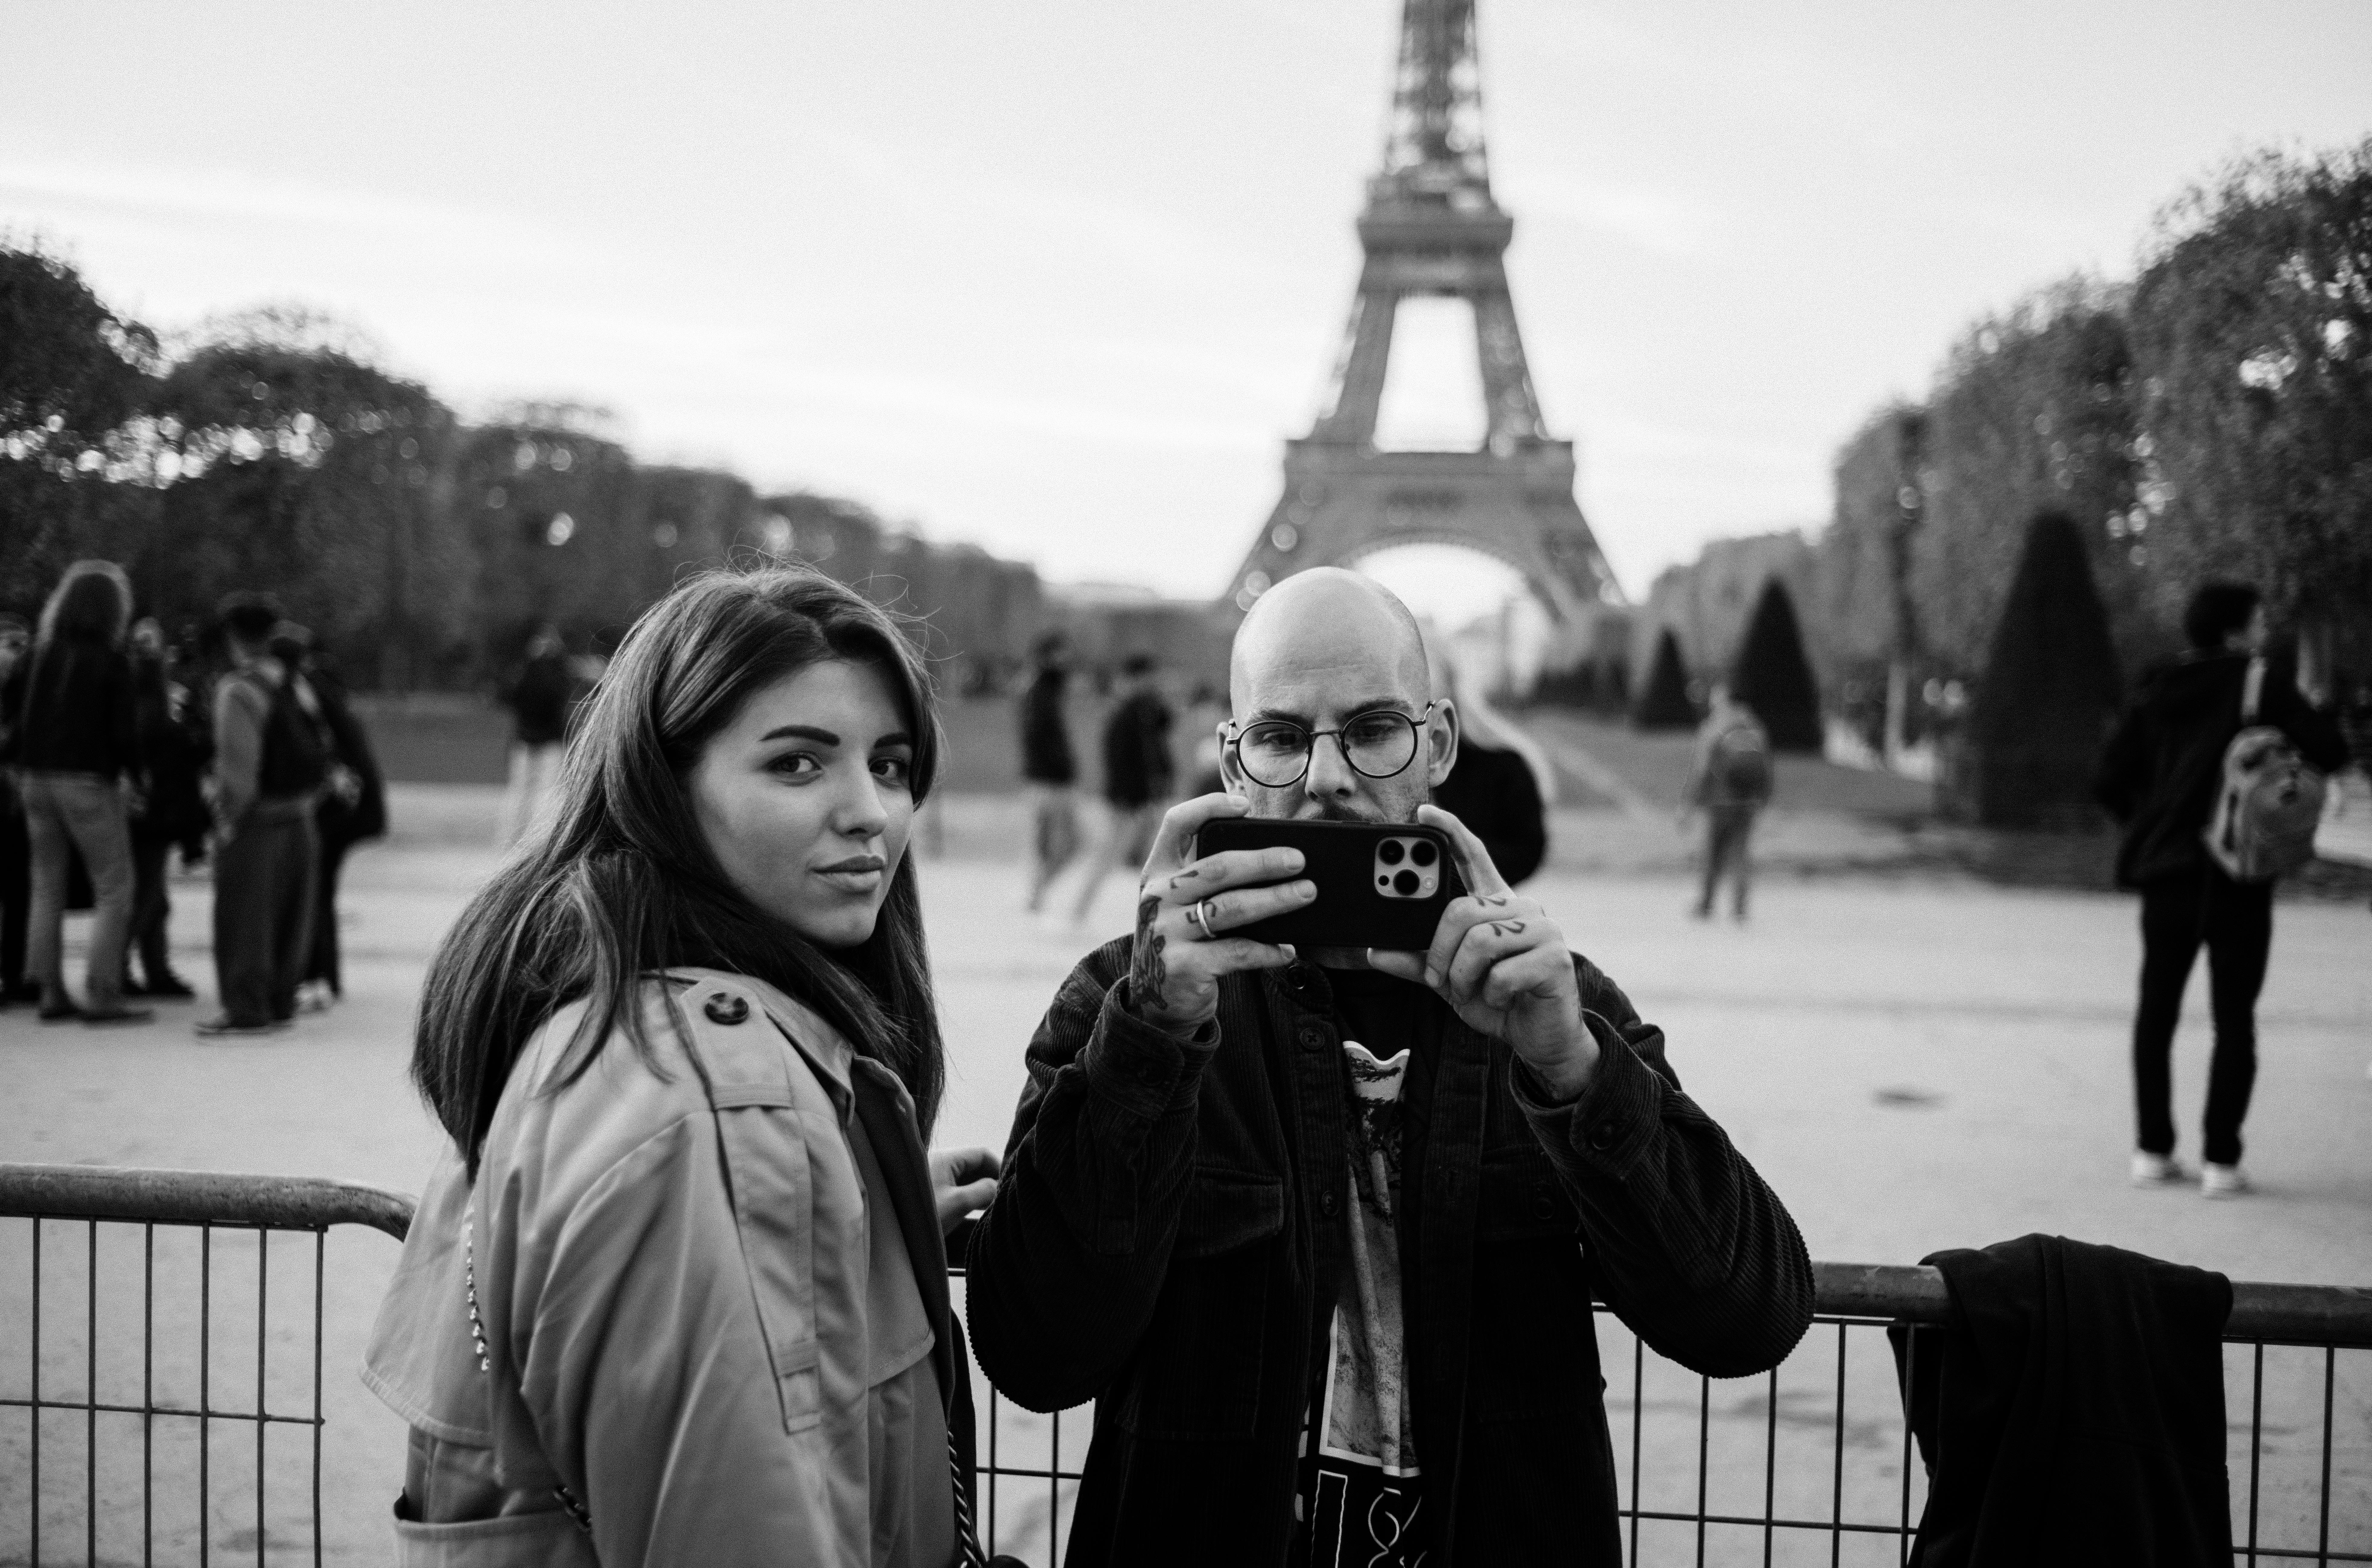 Велина Стефанова и съпругът ѝ Димитри Стефанов - селфи край айфеловата кула в Париж - интервю